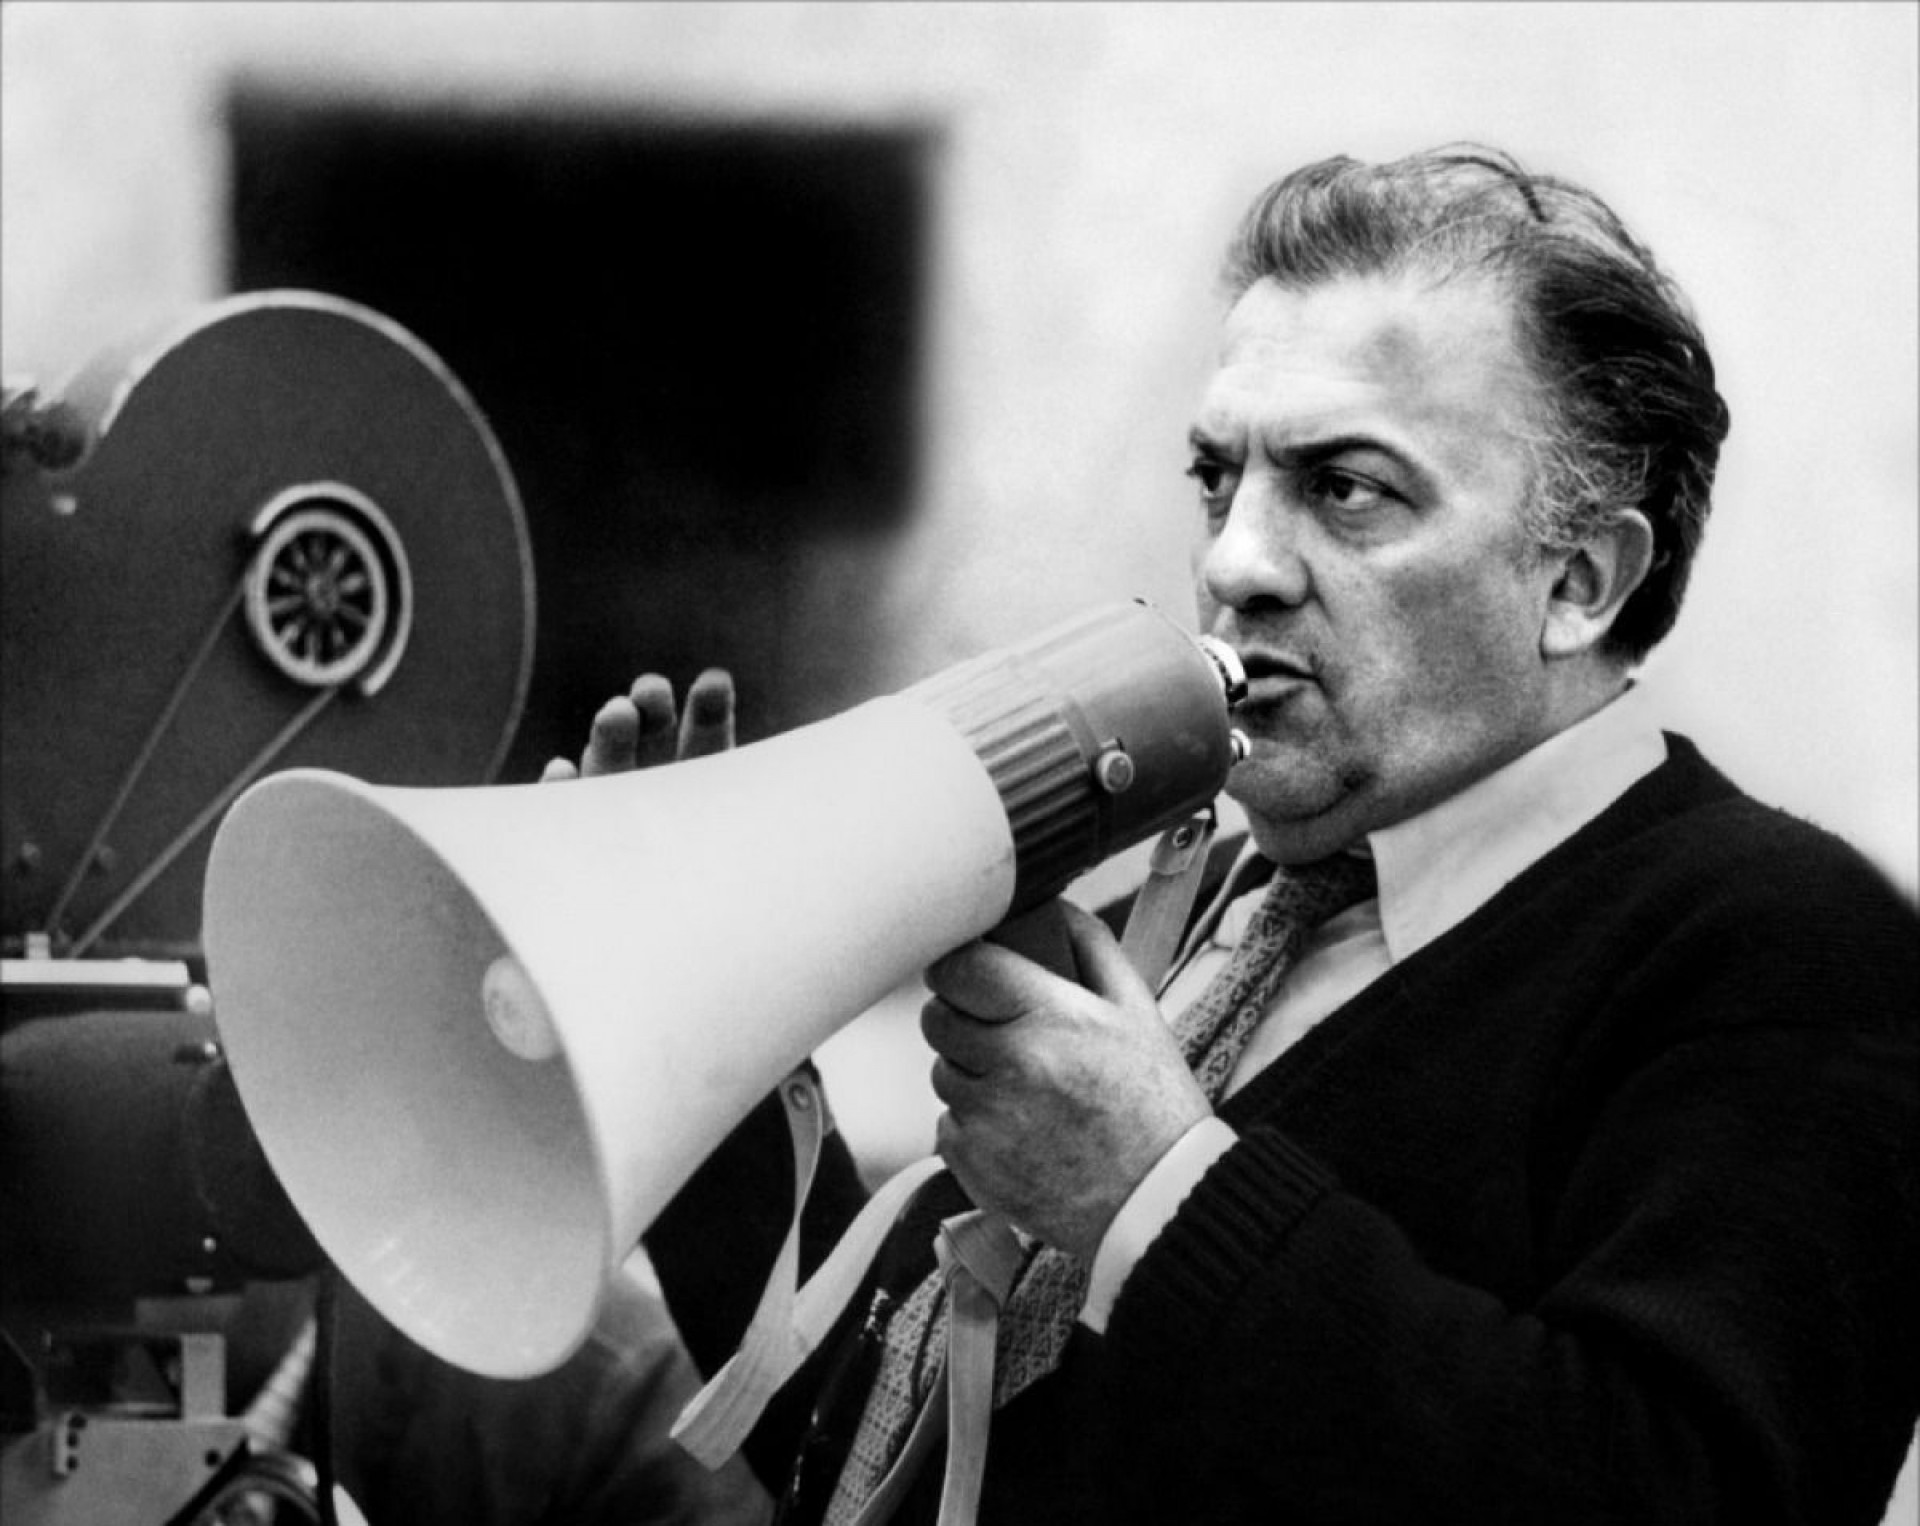 Fellini e il Sogno. Flavia Salierno intervista Catherine McGilvray sul film “Fellini e l’Ombra”